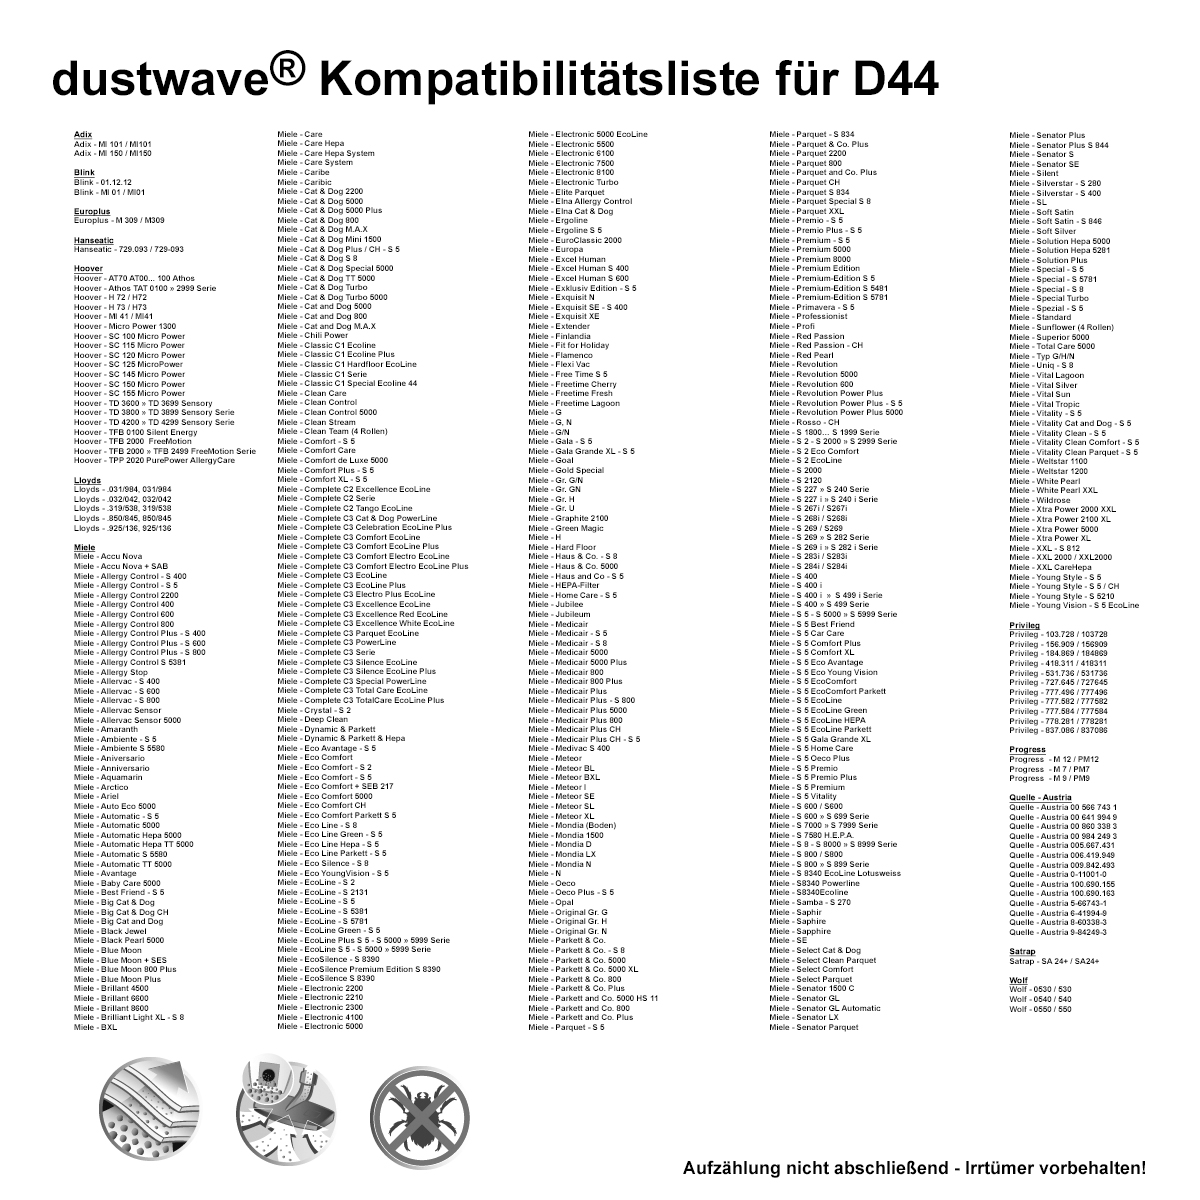 1 Staubsaugerbeutel | Staubbeutel passend für Miele - Complete C3 PowerLine Bodenstaubsauger von dustwave® Markenstaubbeutel - Made in Germany + inkl. Microfilter